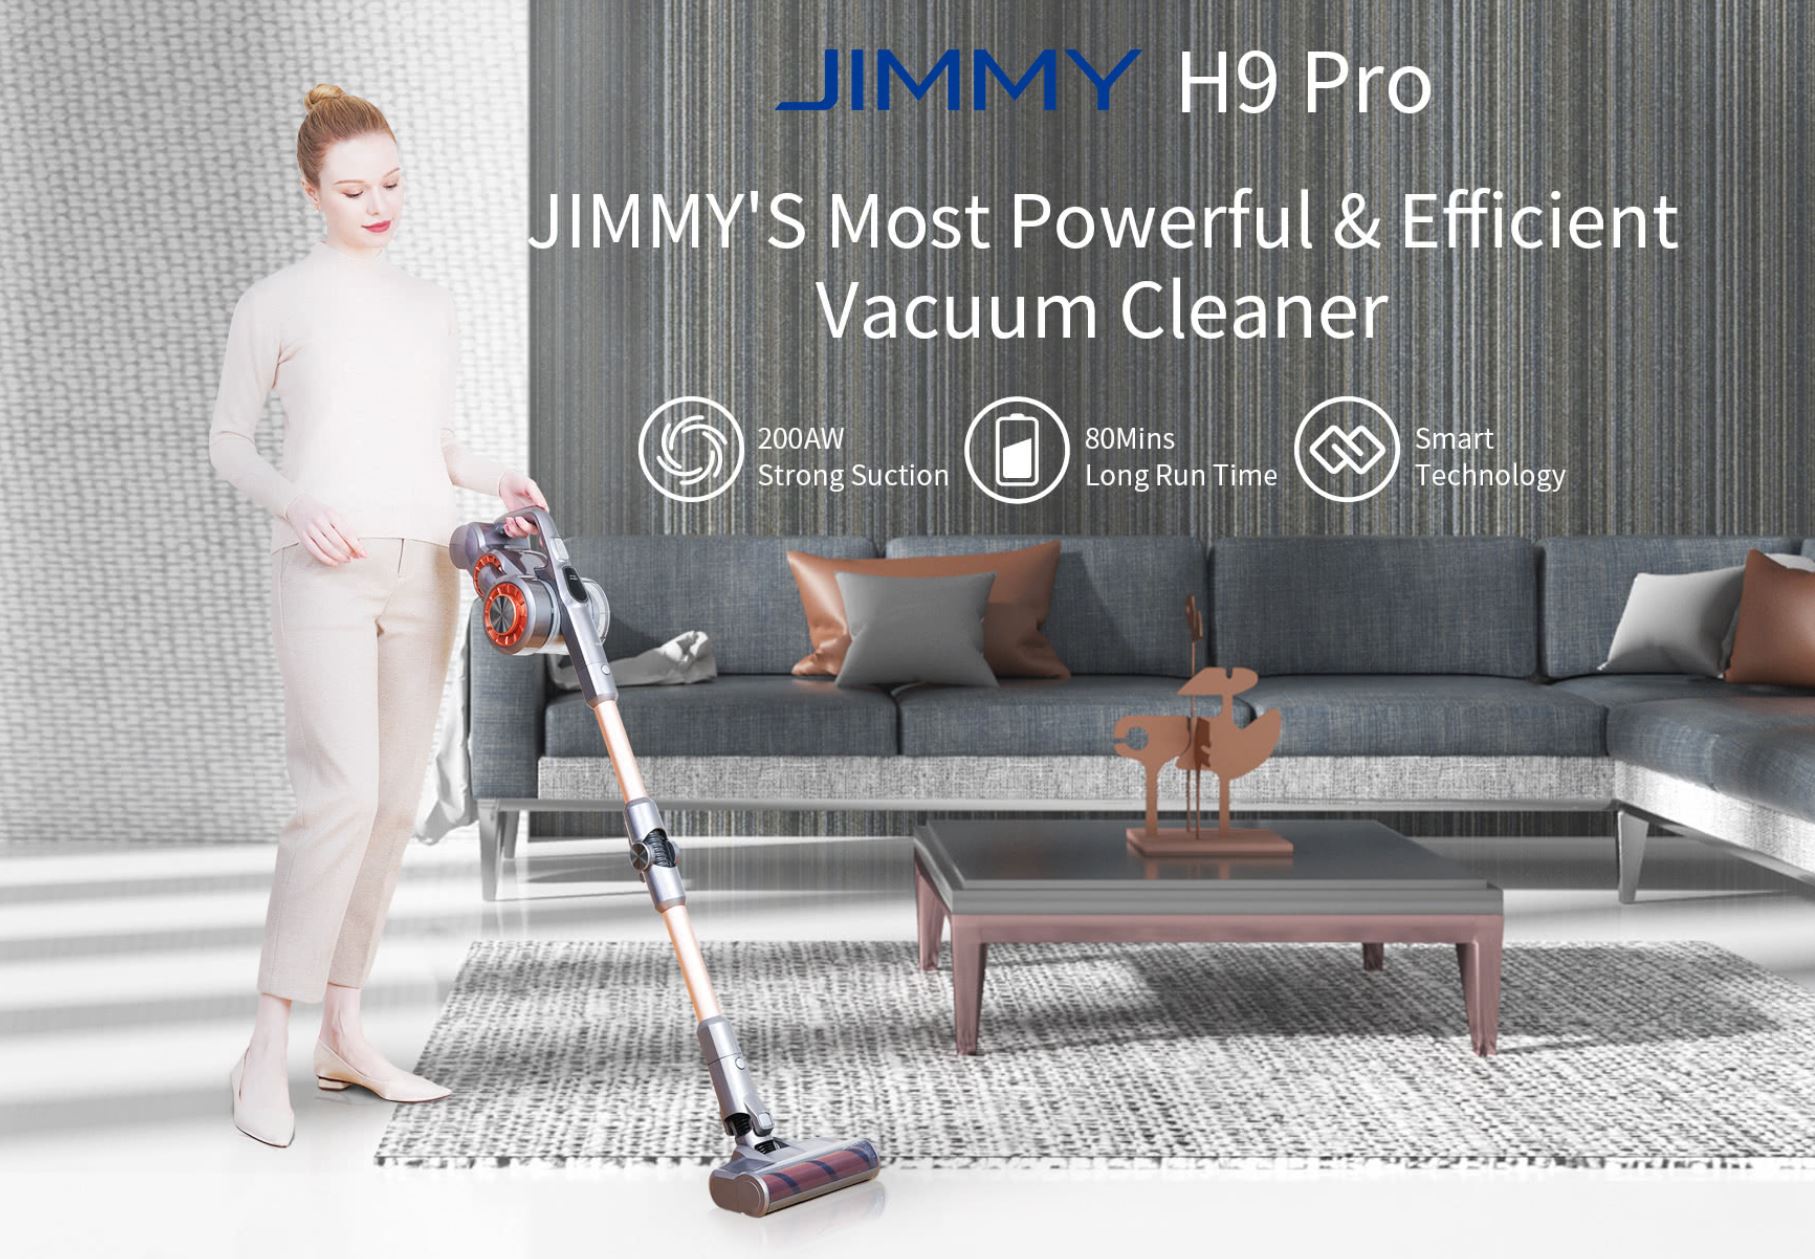 Promocja nowej serii odkurzaczy Jimmy w geekbuying.com - Jimmy H9 Pro